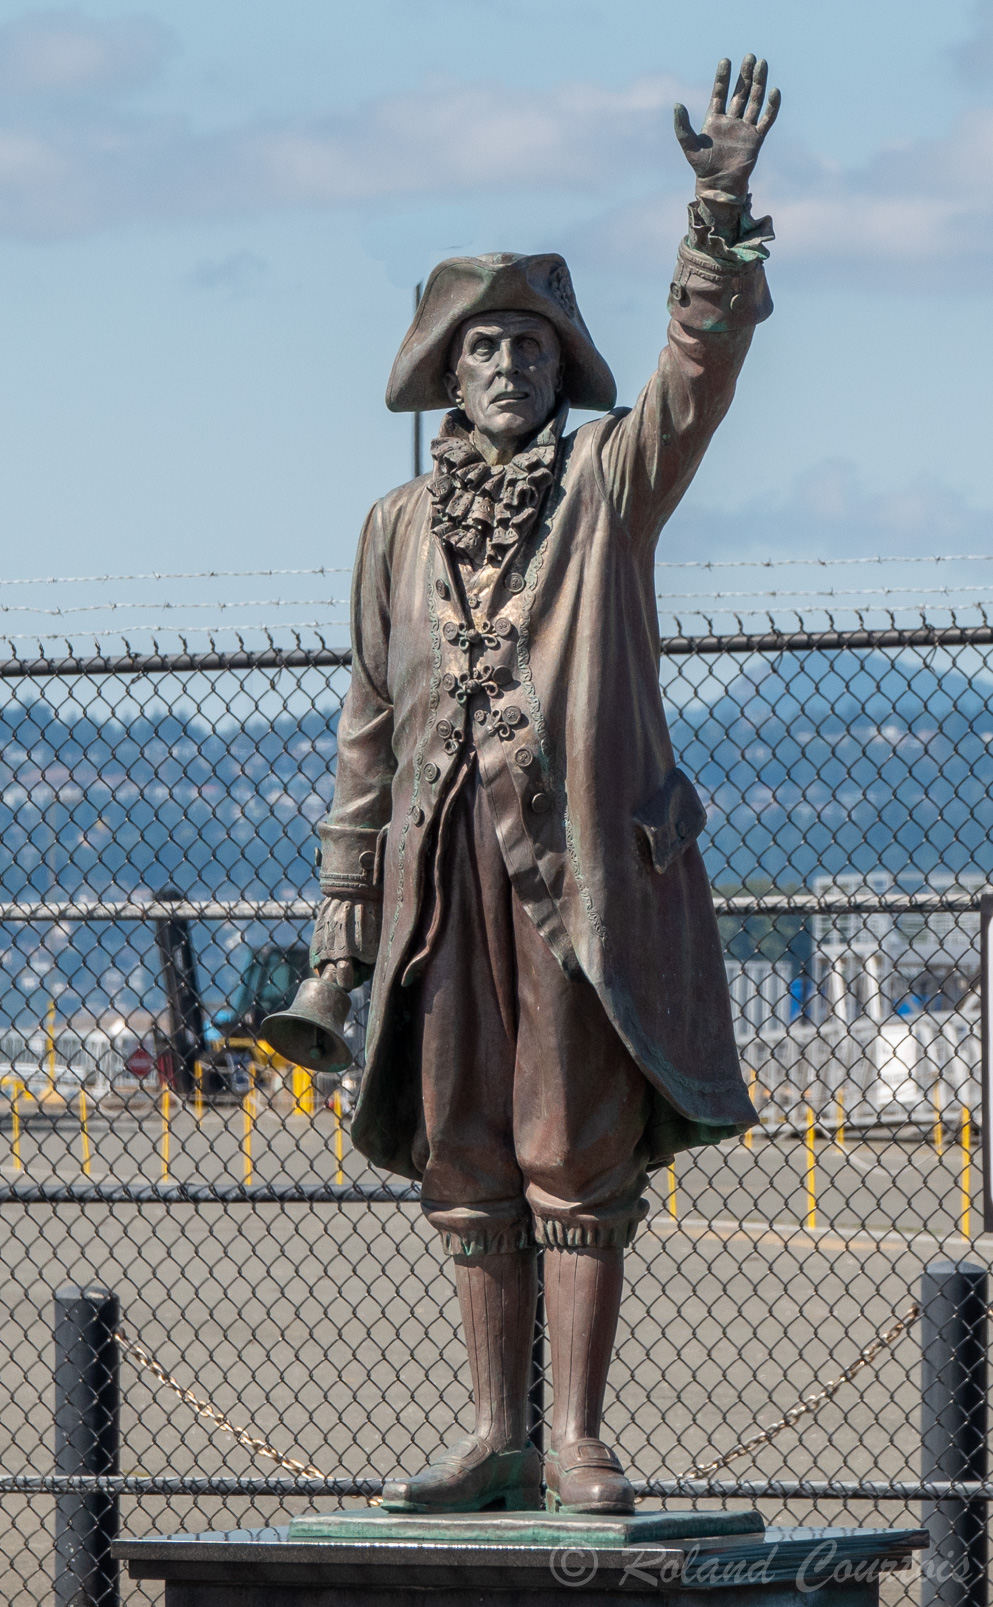 La statue en bronze du crieur public. il annonce des nouvelles, lit les proclamations de la ville et accueille les passagers des bateaux de croisière à leur arrivée au port.